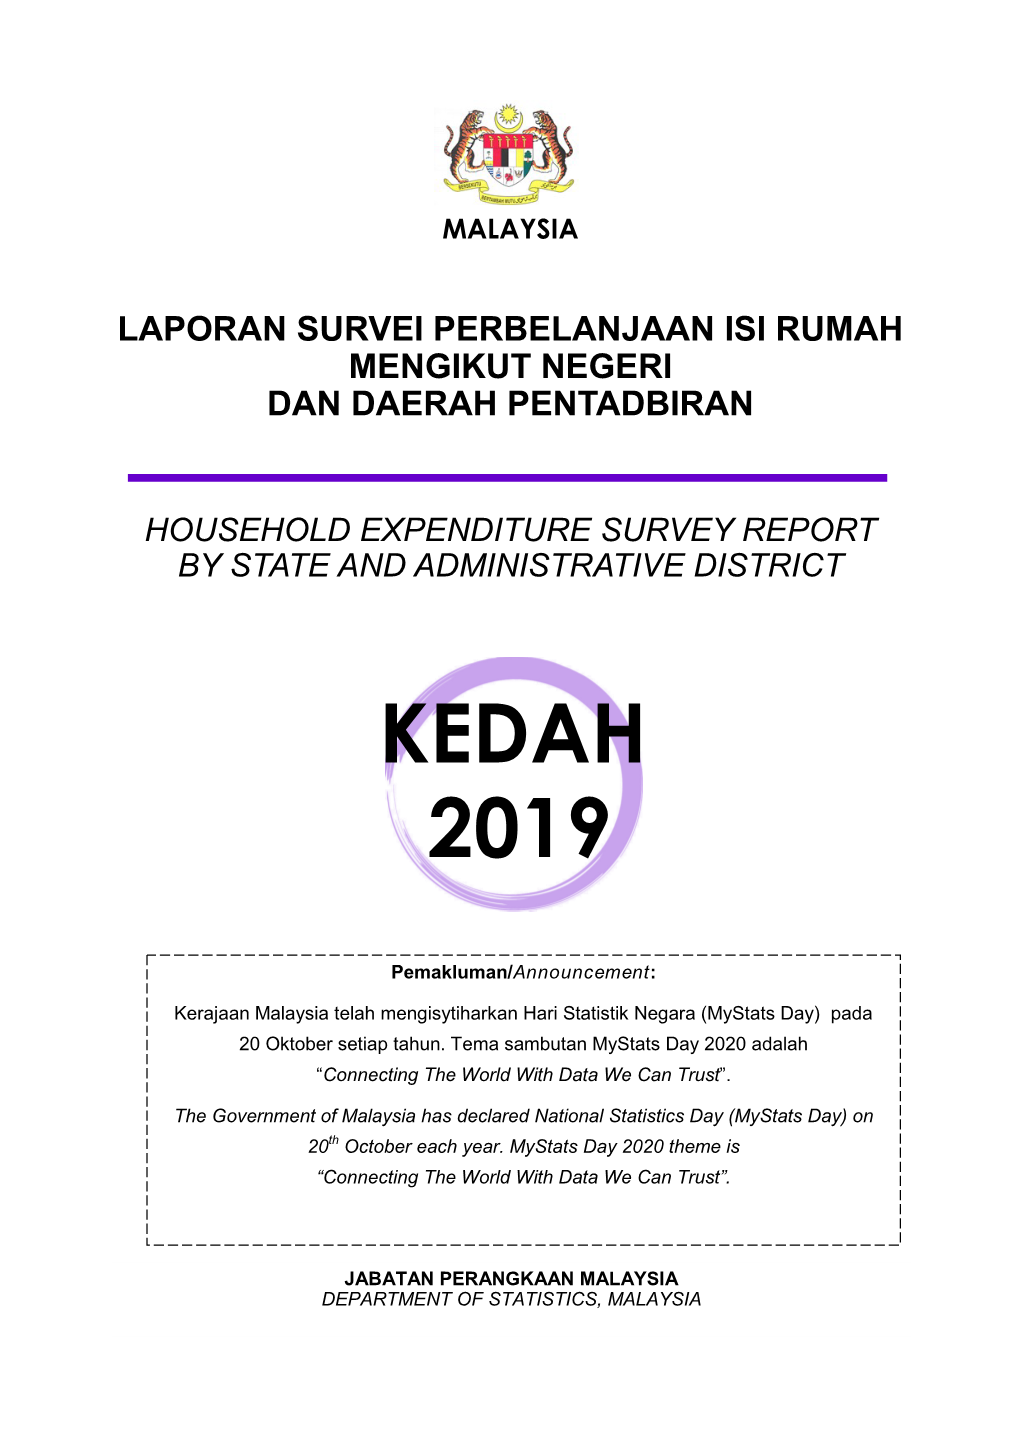 Household Expenditure 2019 Kedah